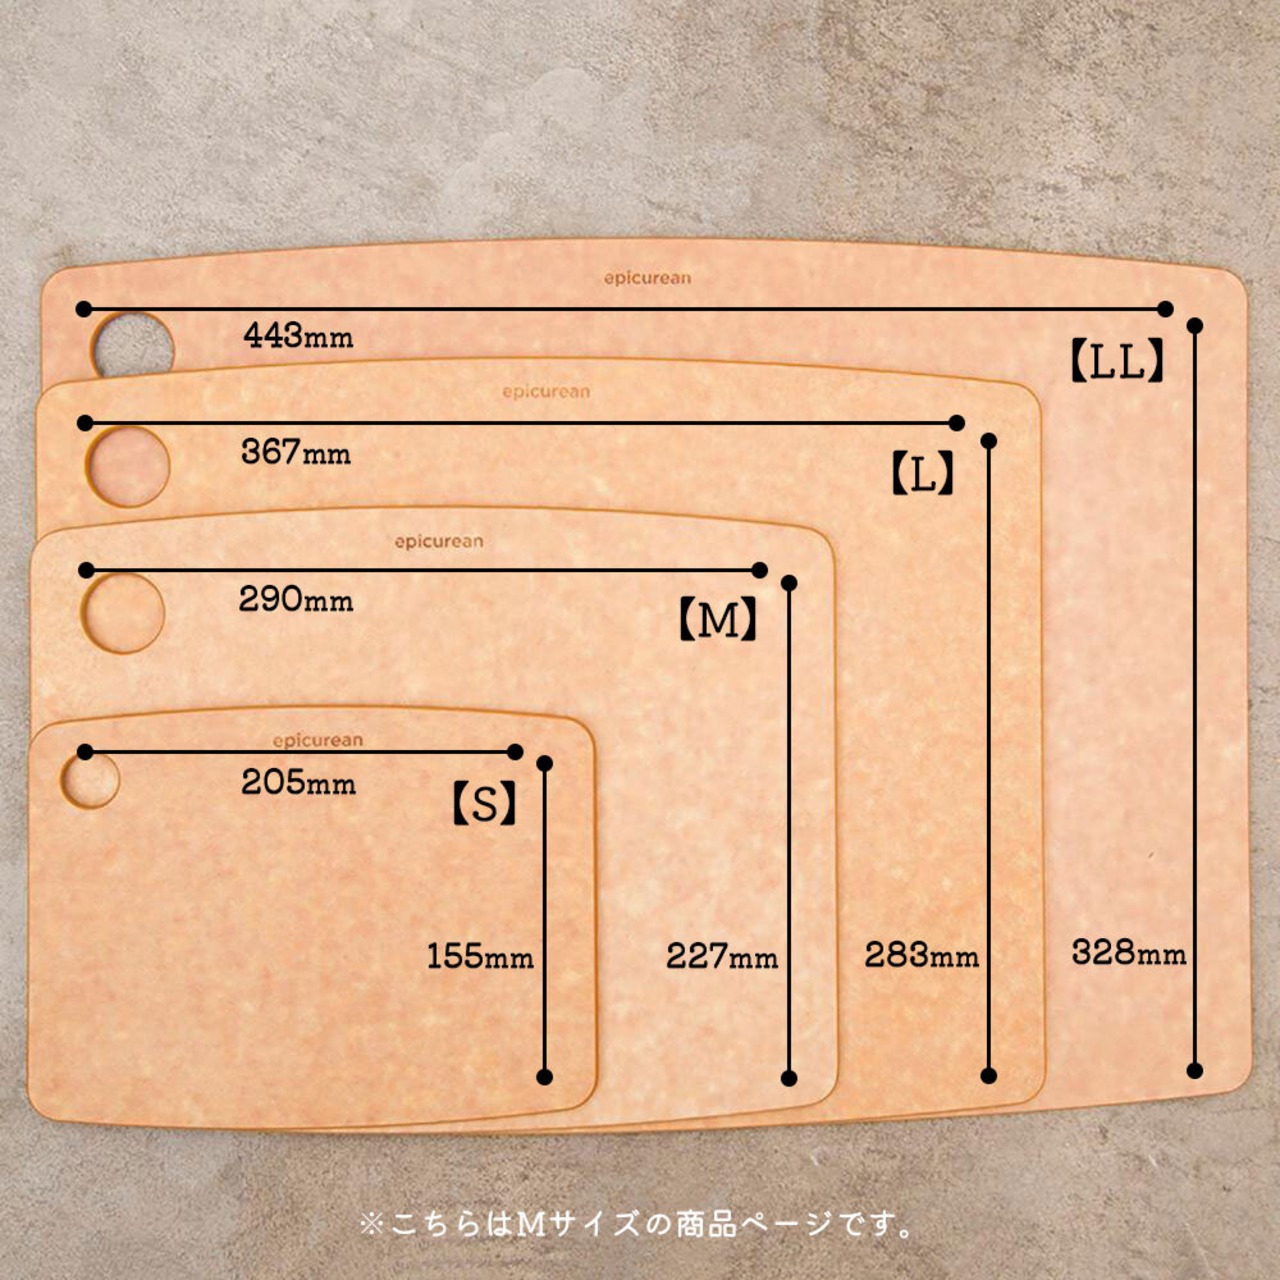 エピキュリアン カッティングボード 木製 まな板 おしゃれ 食洗機対応 epicurean Mサイズ ブラック ナチュラル